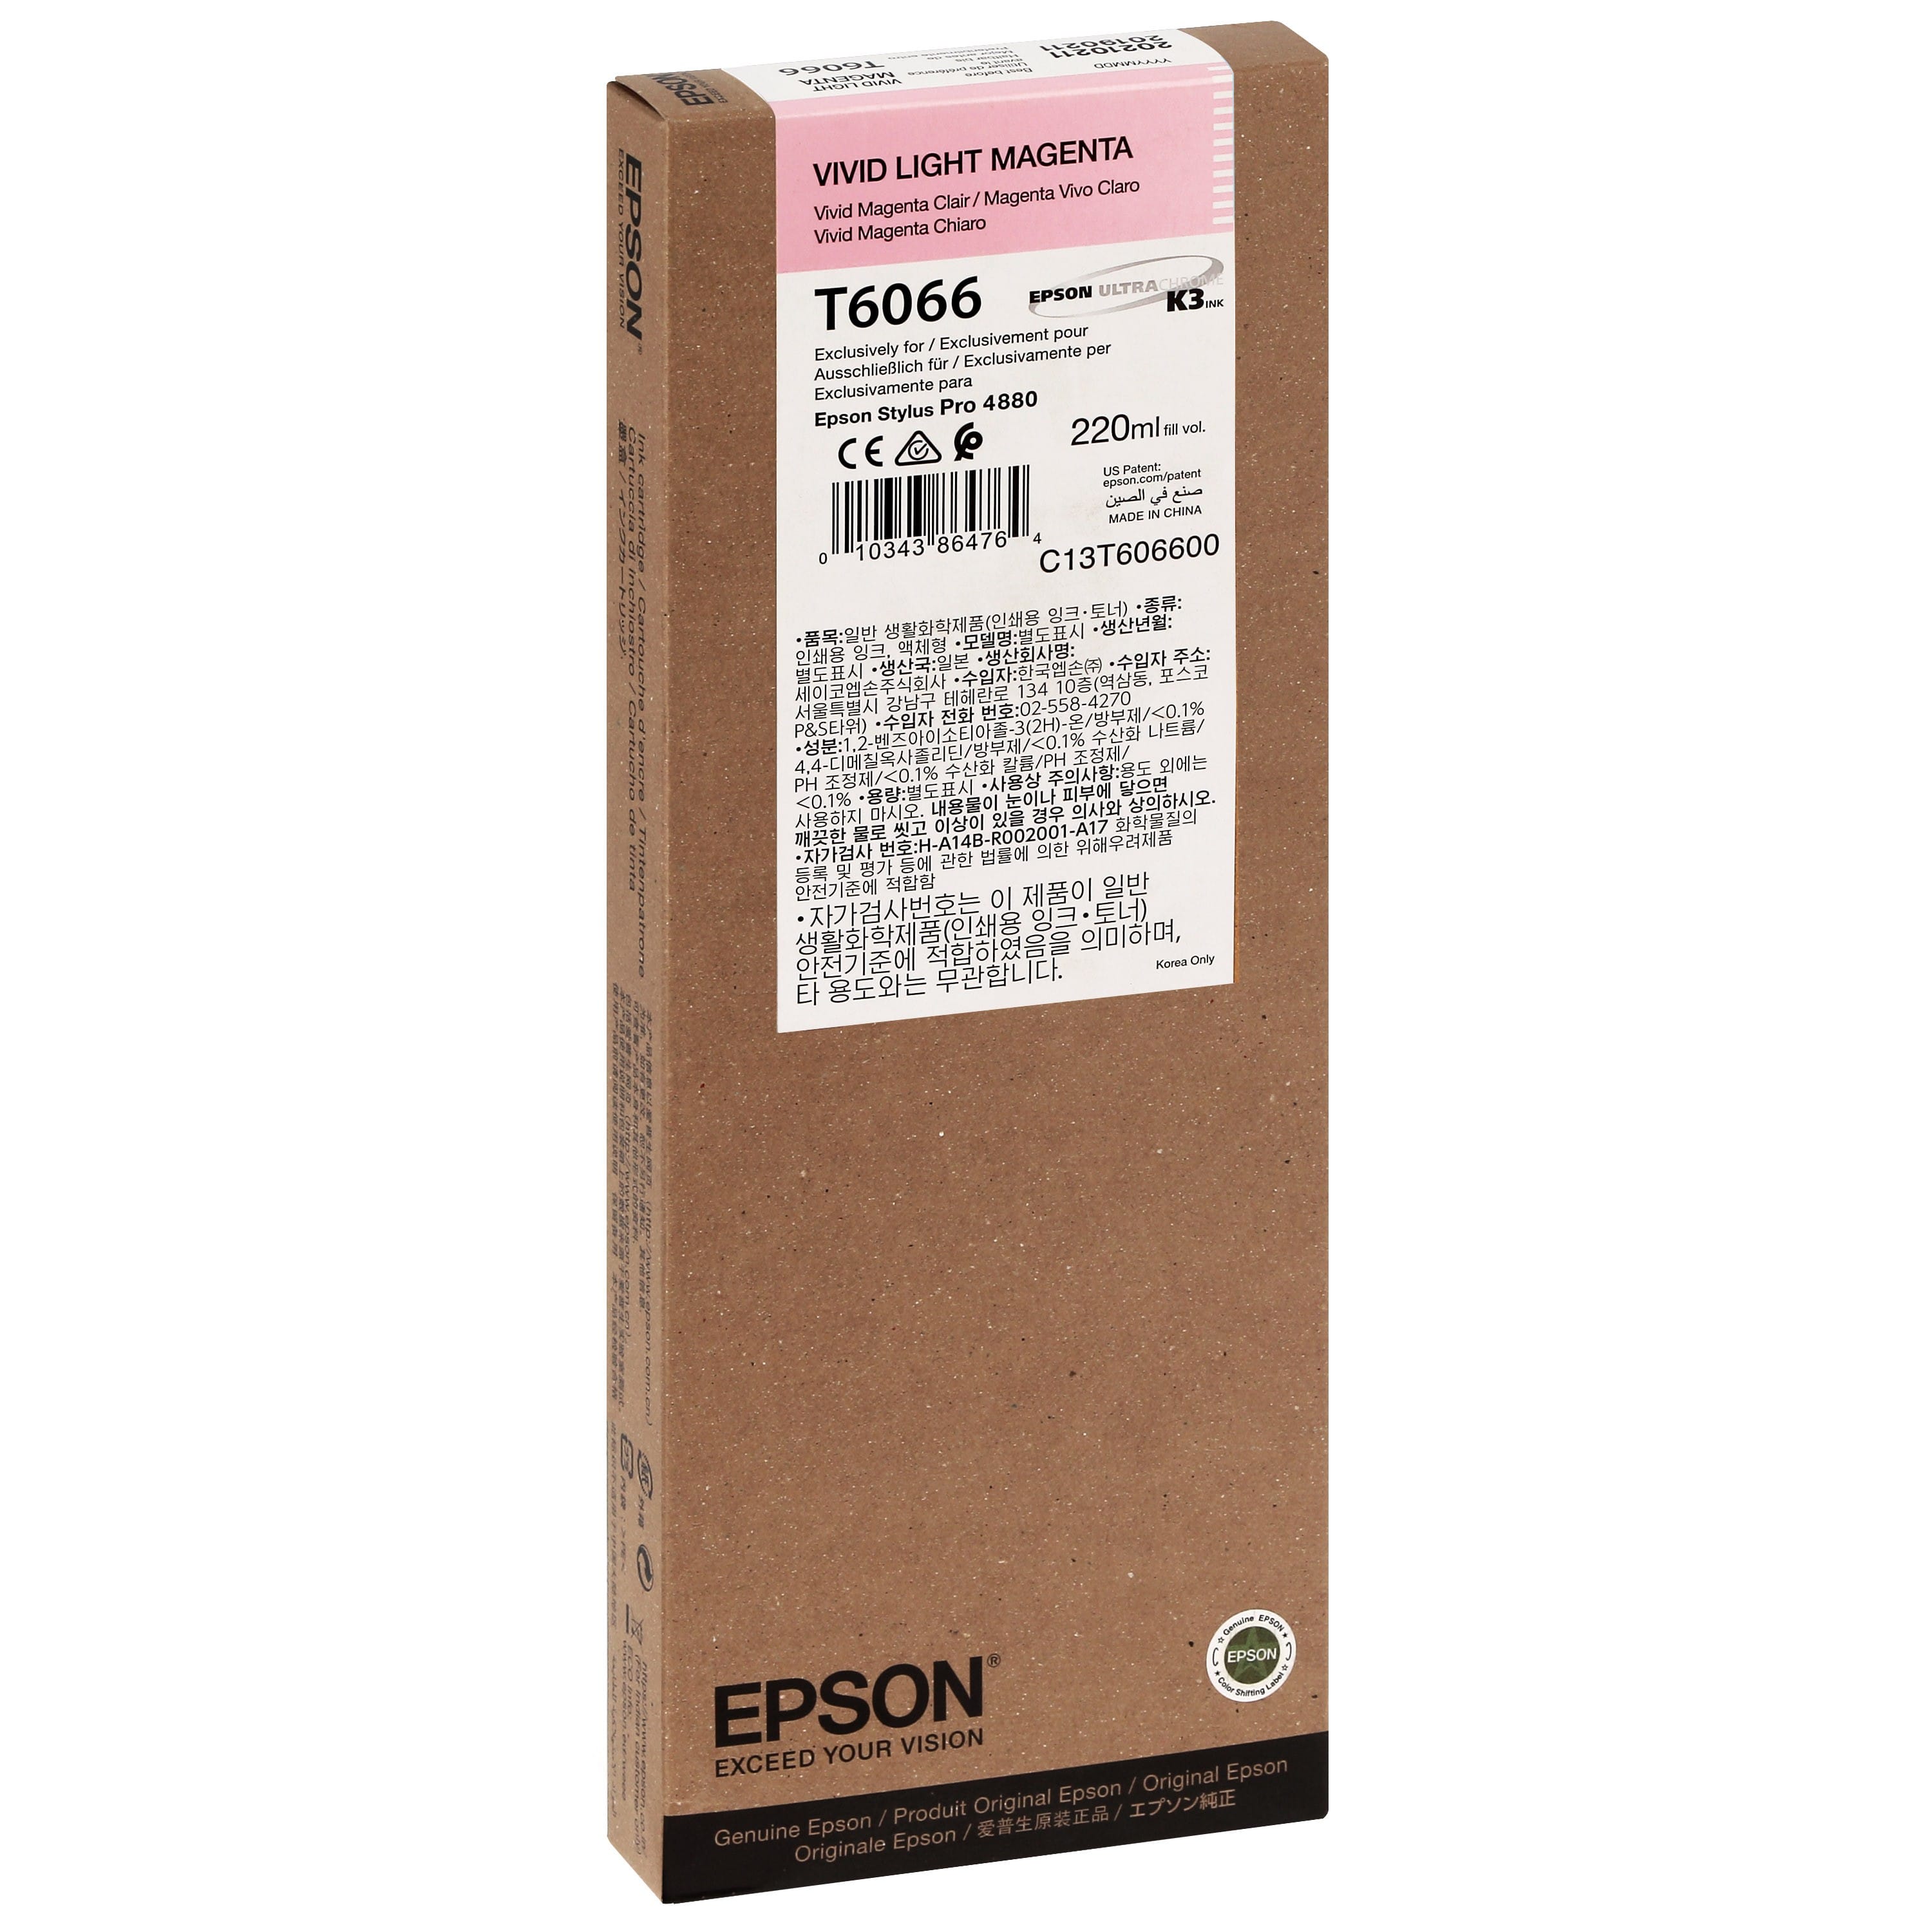 EPSON - Cartouche d'encre traceur T6066 Pour imprimante 4880 Vivid Magenta clair - 220ml